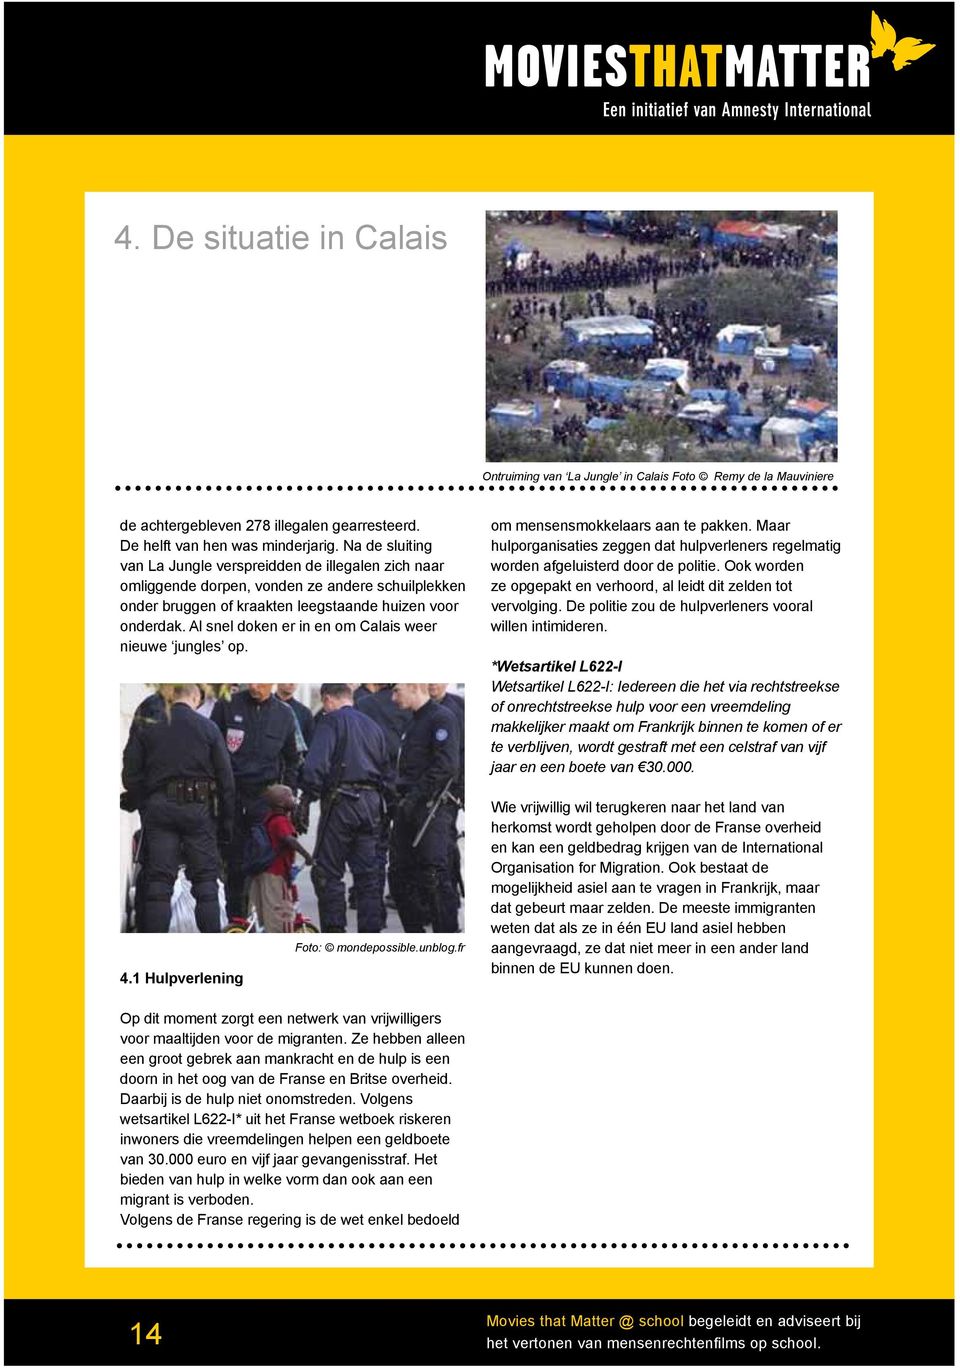 Al snel doken er in en om Calais weer nieuwe jungles op. om mensensmokkelaars aan te pakken. Maar hulporganisaties zeggen dat hulpverleners regelmatig worden afgeluisterd door de politie.